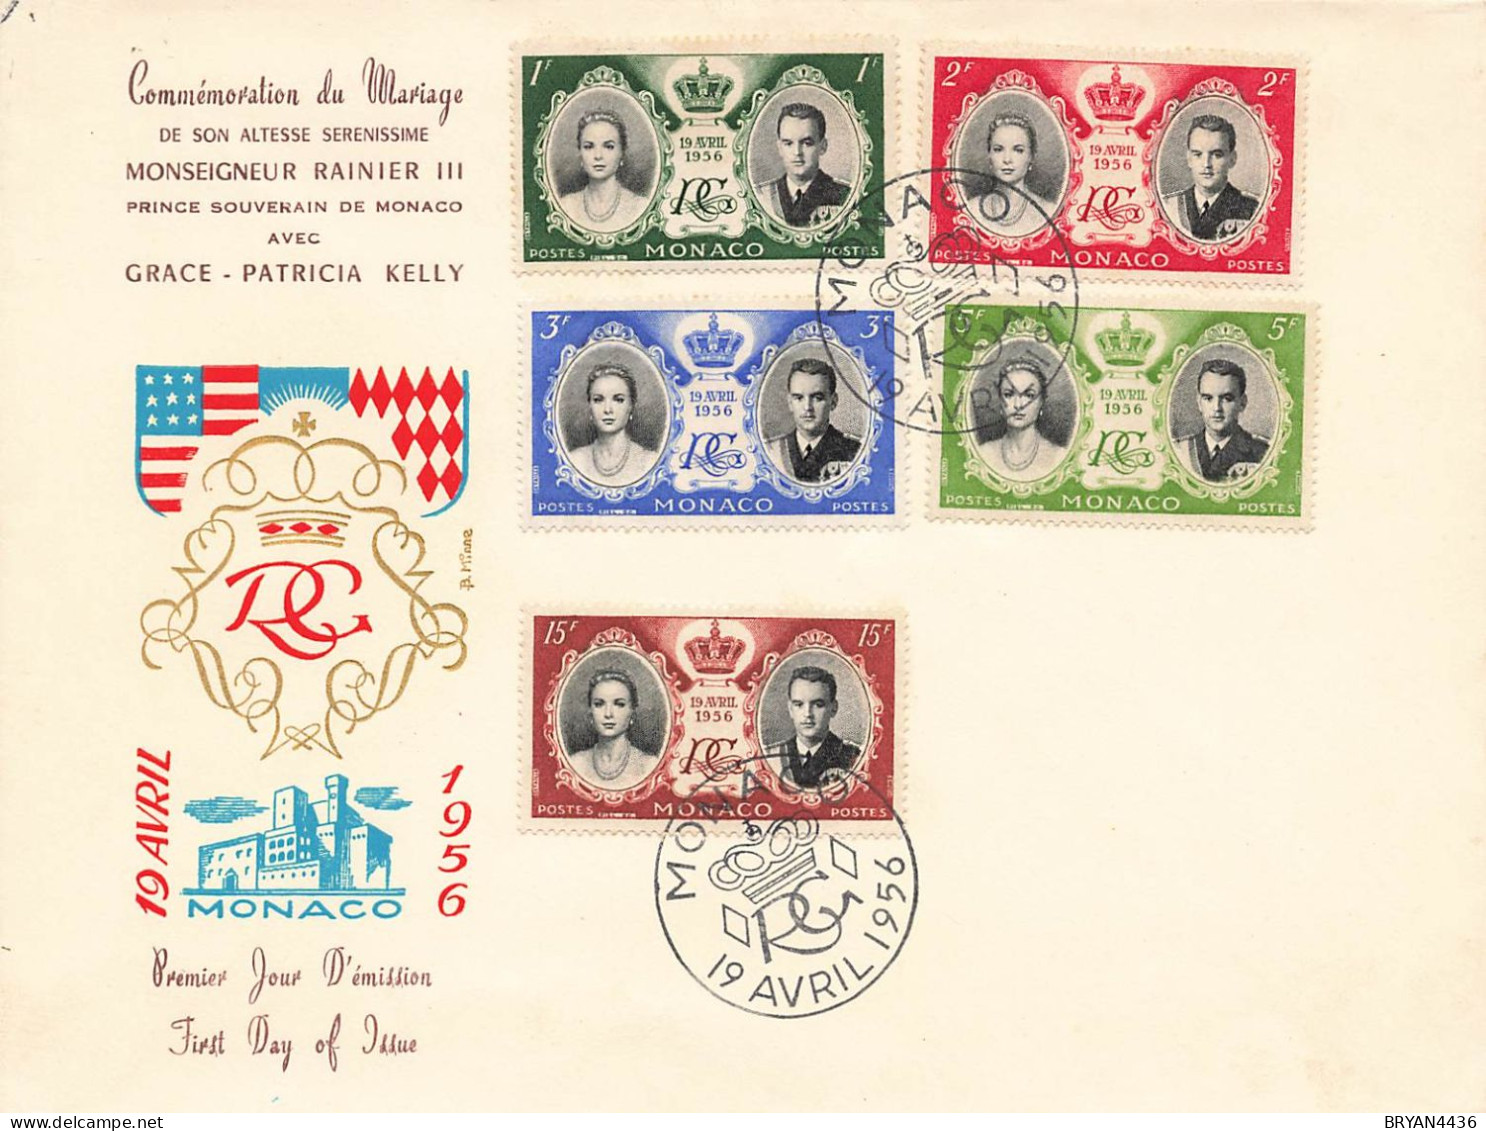 MONACO - LETTRE COMMEMORATION MARIAGE PRINCE RANIER III  Avec GRACE KELLY - 19 1VVRIL 1956 - TRES BON ETAT - Covers & Documents